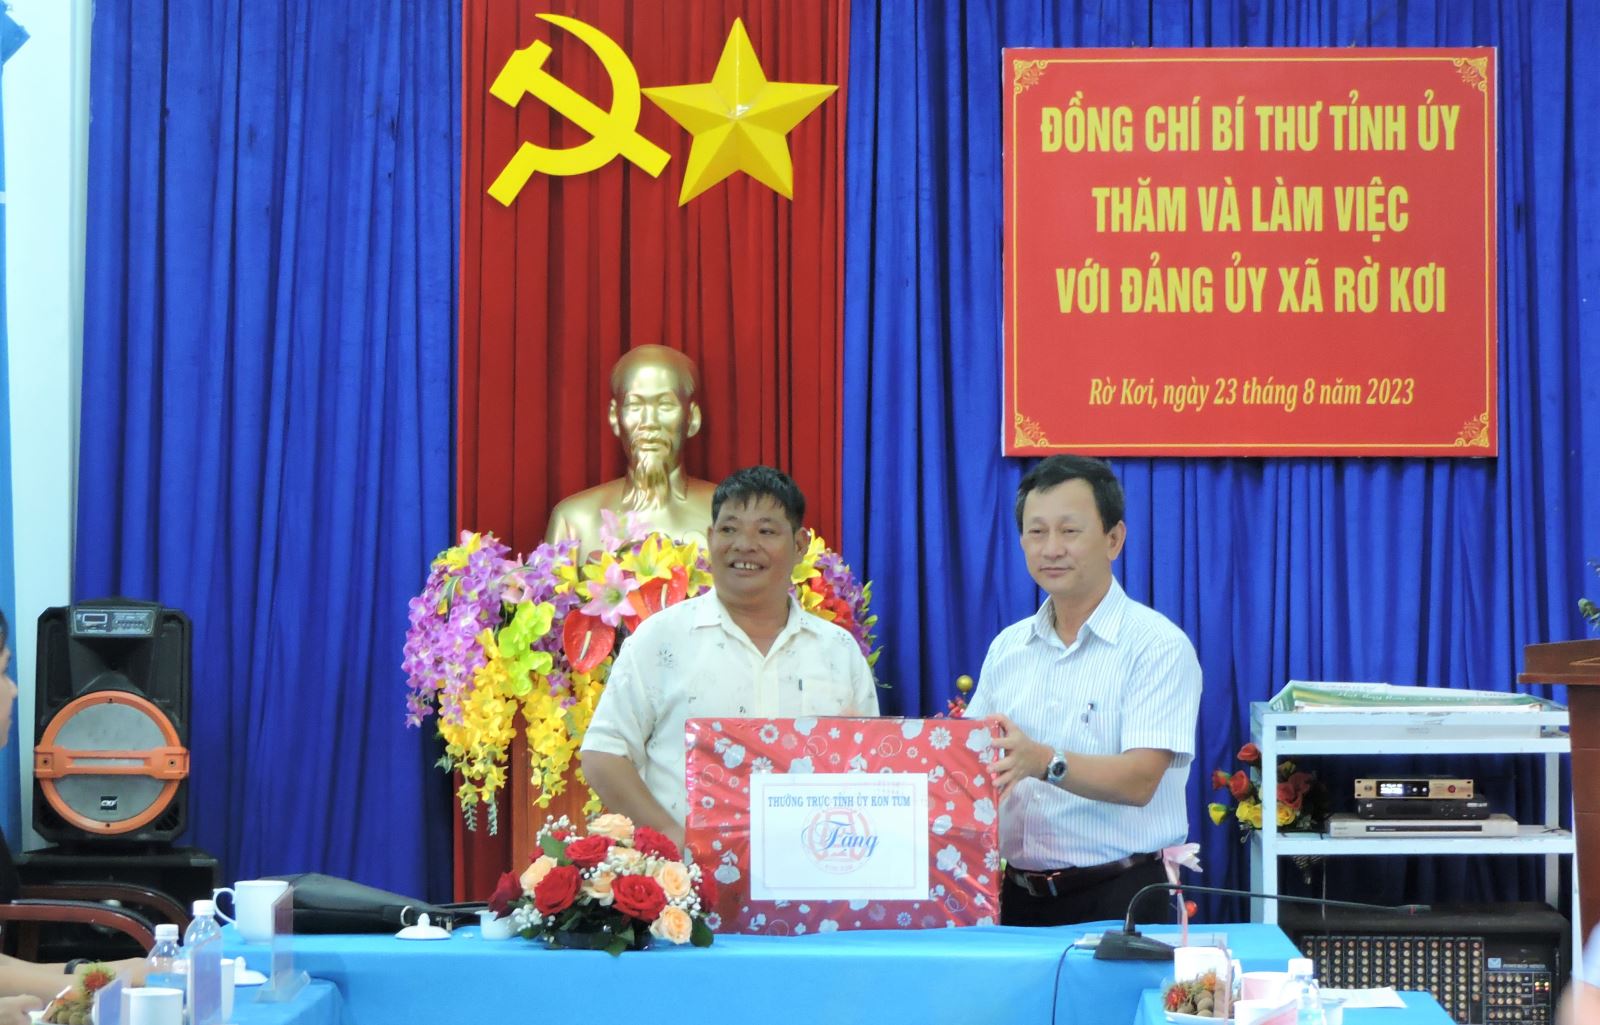 Đồng chí Bí thư Tỉnh ủy làm việc với Đảng ủy xã Rờ Kơi, huyện Sa Thầy